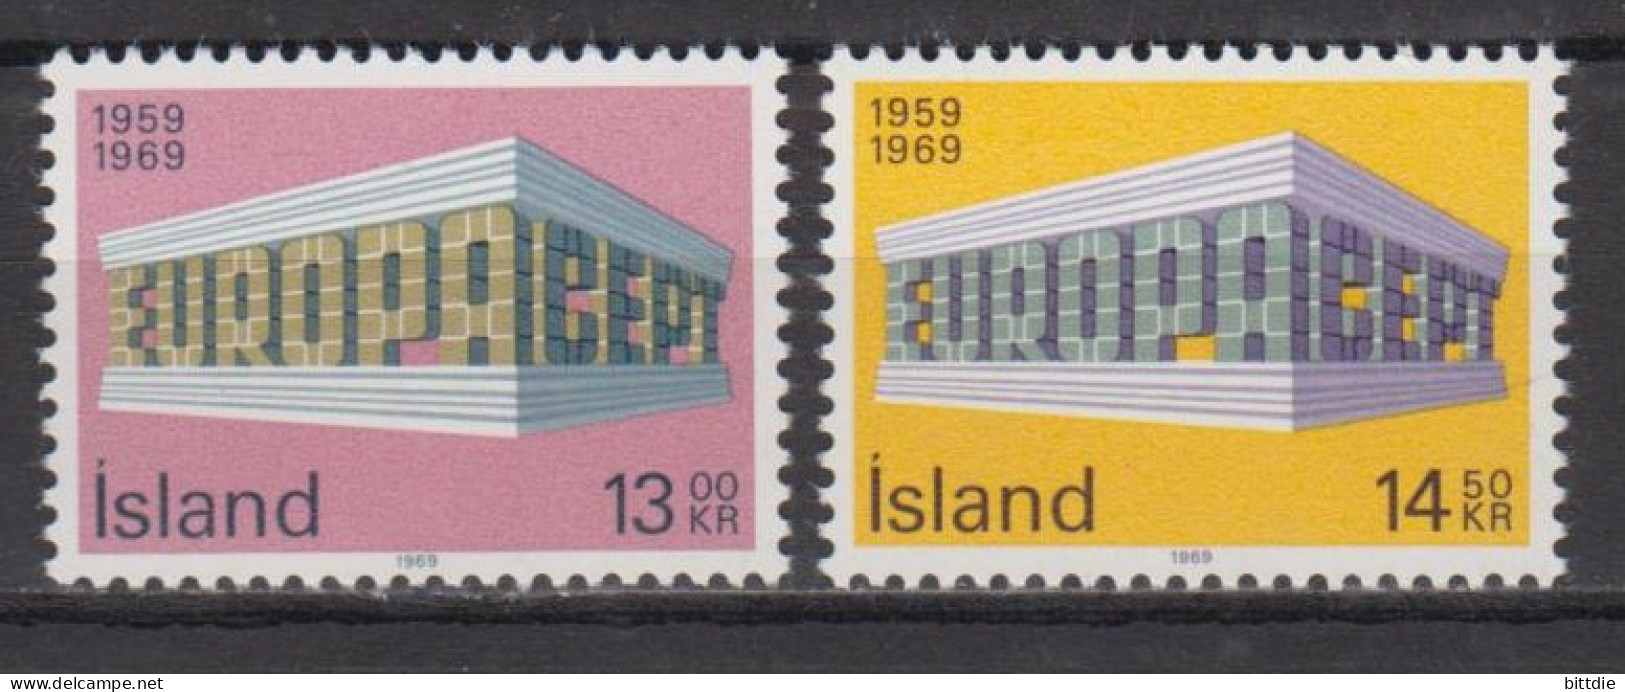 Europa/Cept , Island  428/29 , Xx  (S 1750) - 1969